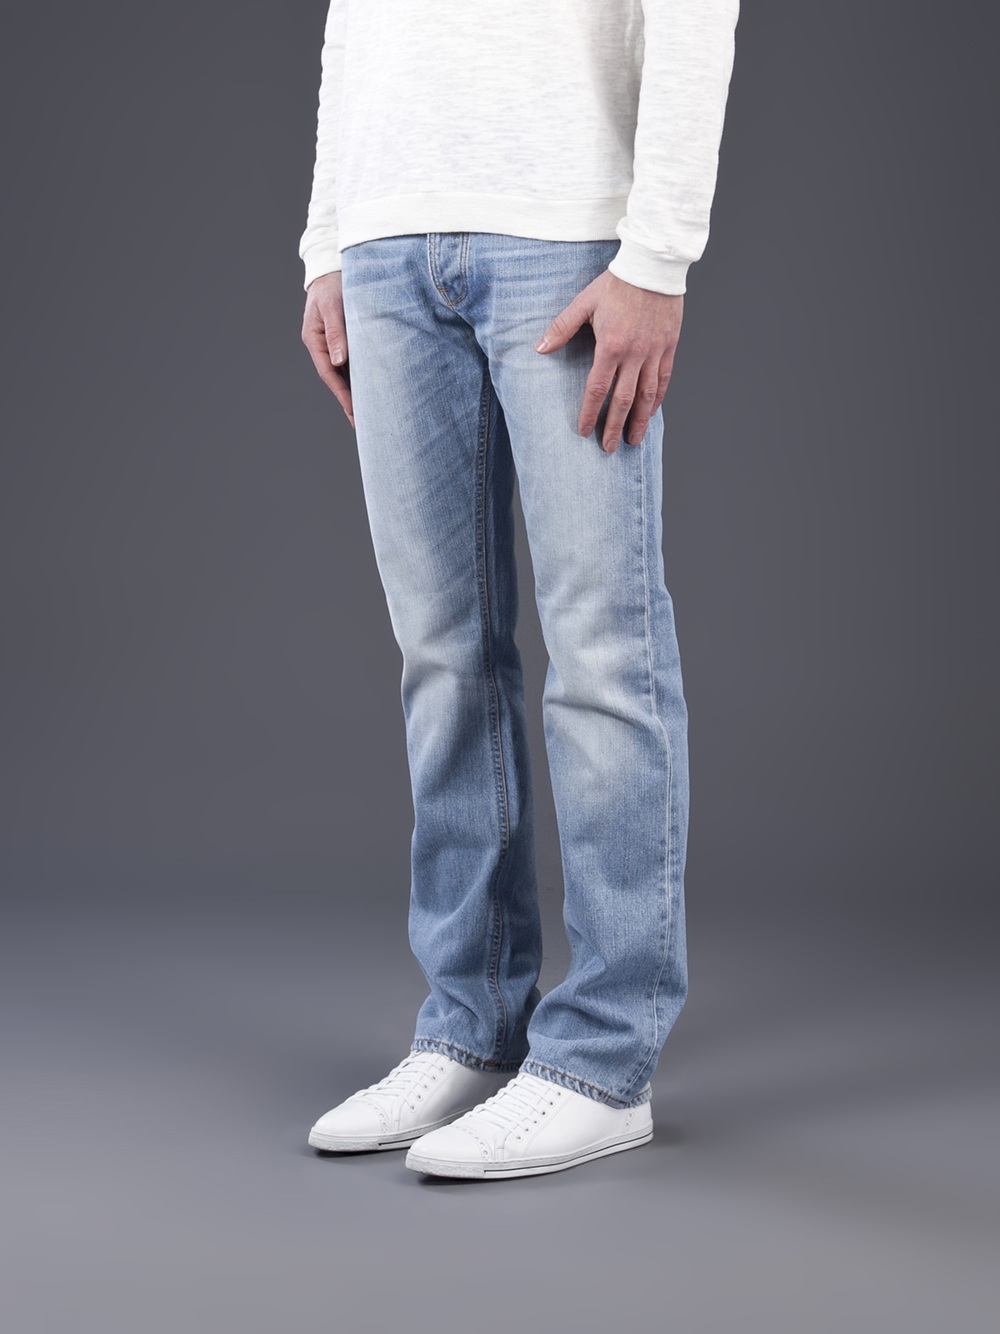 nudie jeans average joe